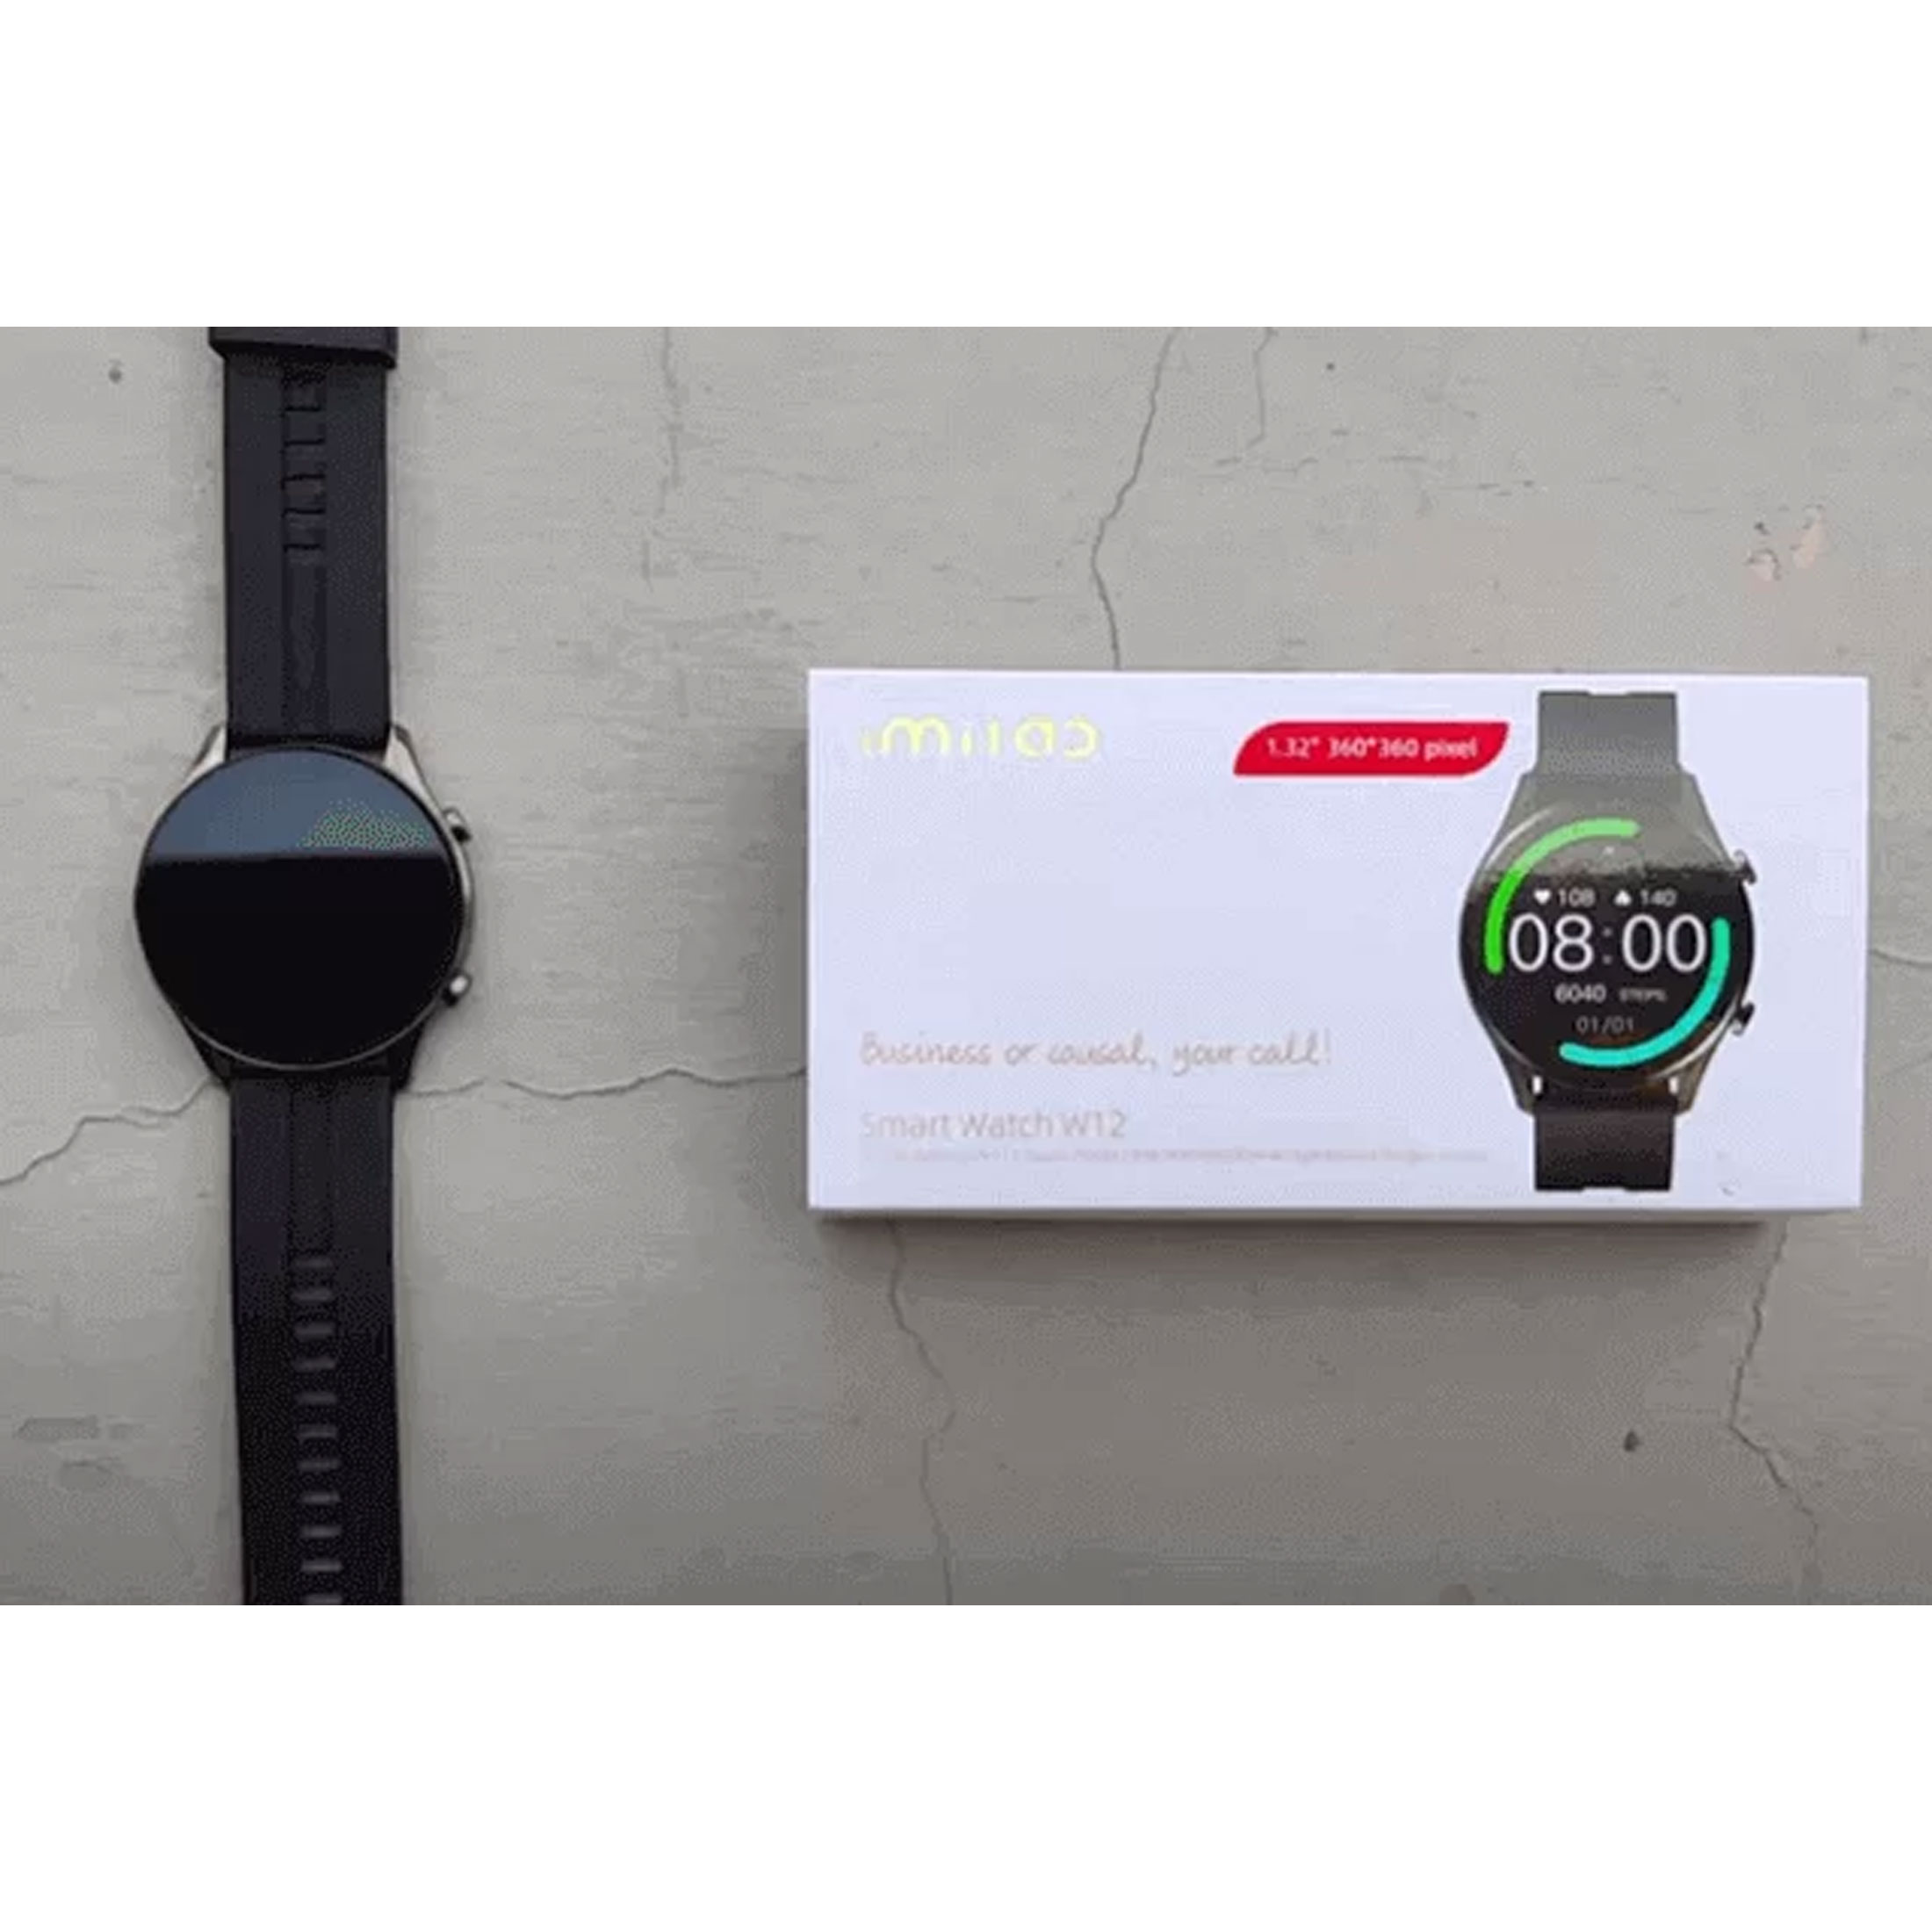 اسمارت واچ  آی می لب مدل Smart Watch W12 New Version